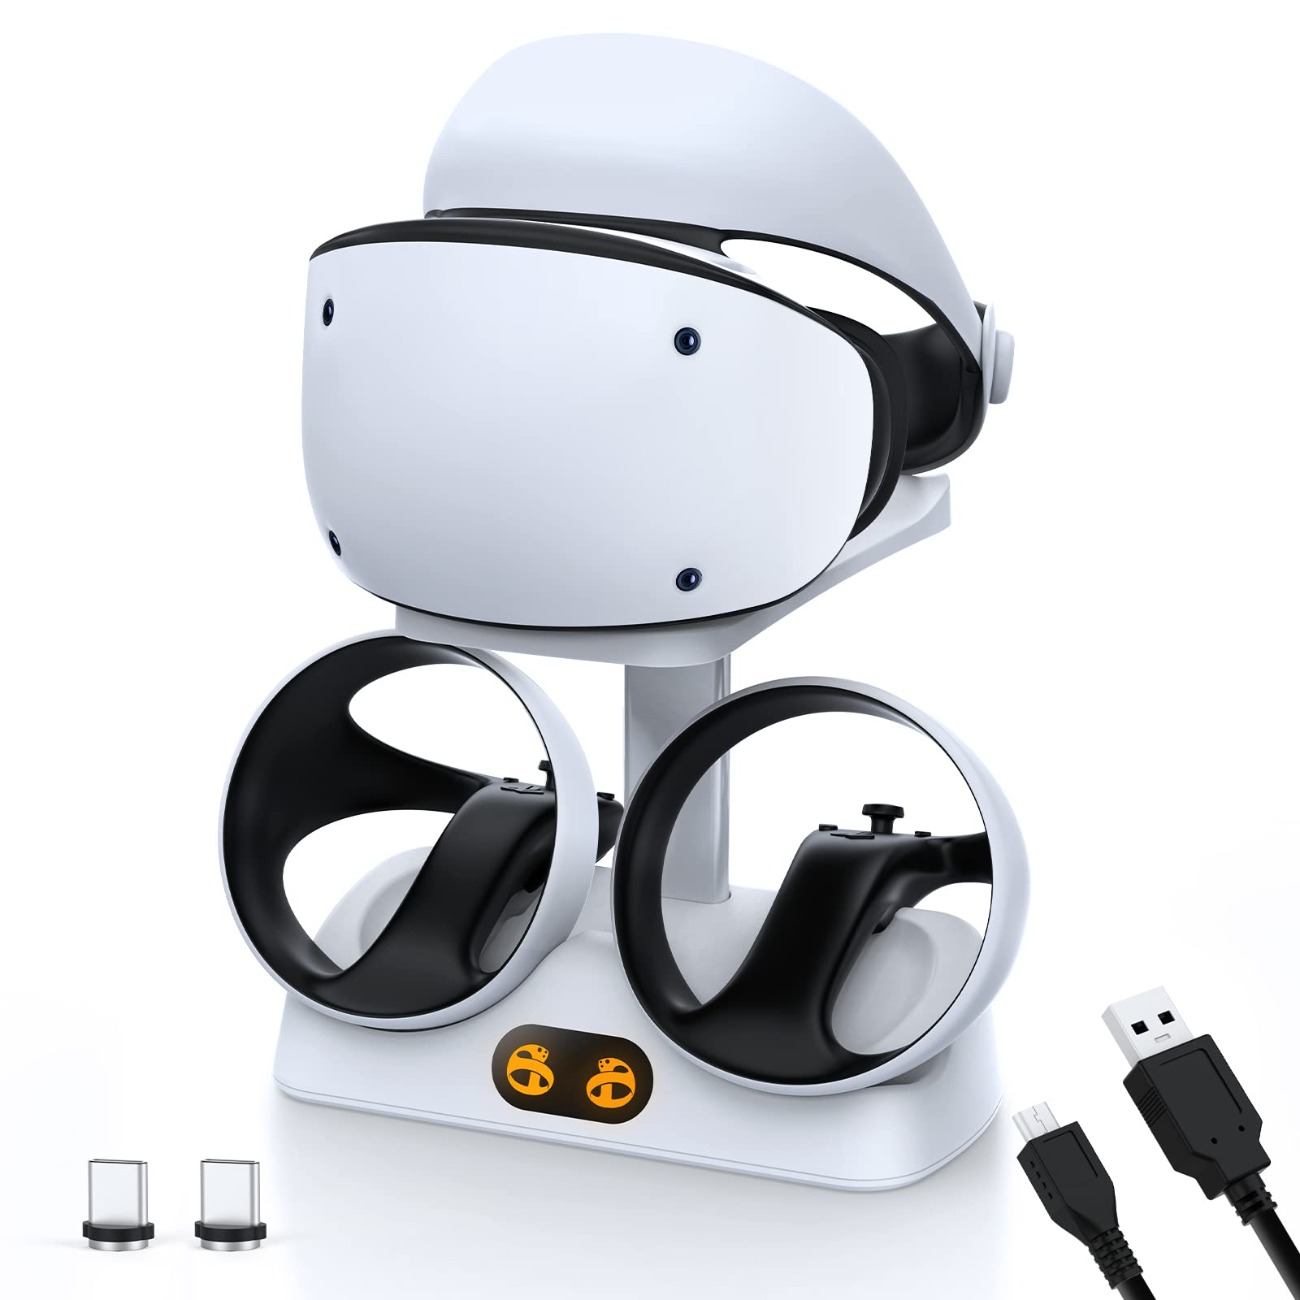 PS VR2 : Date de commercialisation de l'adaptateur PC